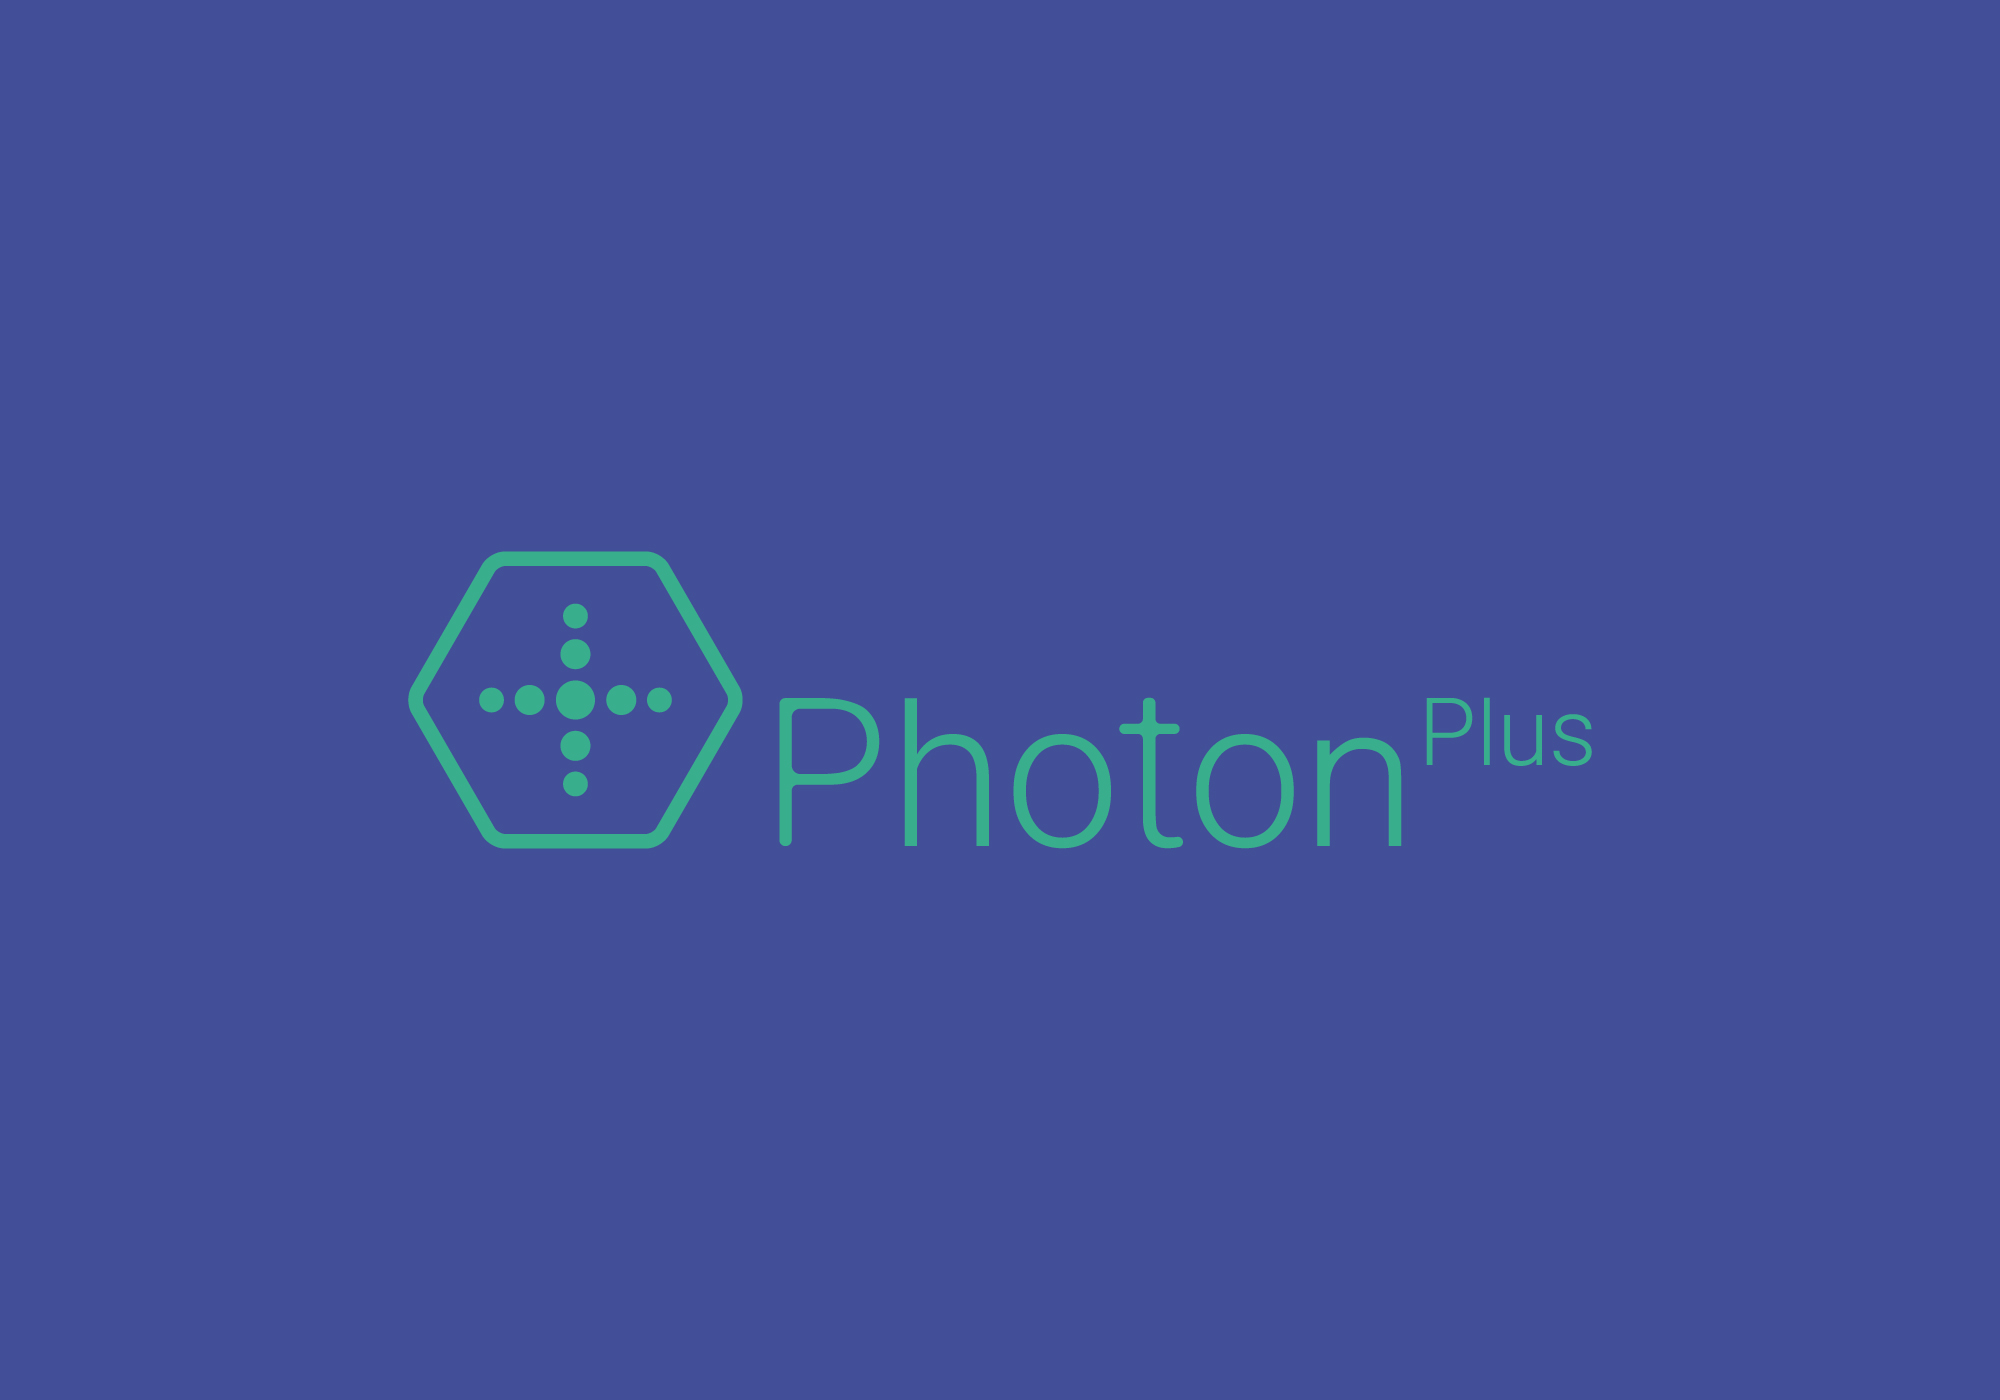 photonplus-09